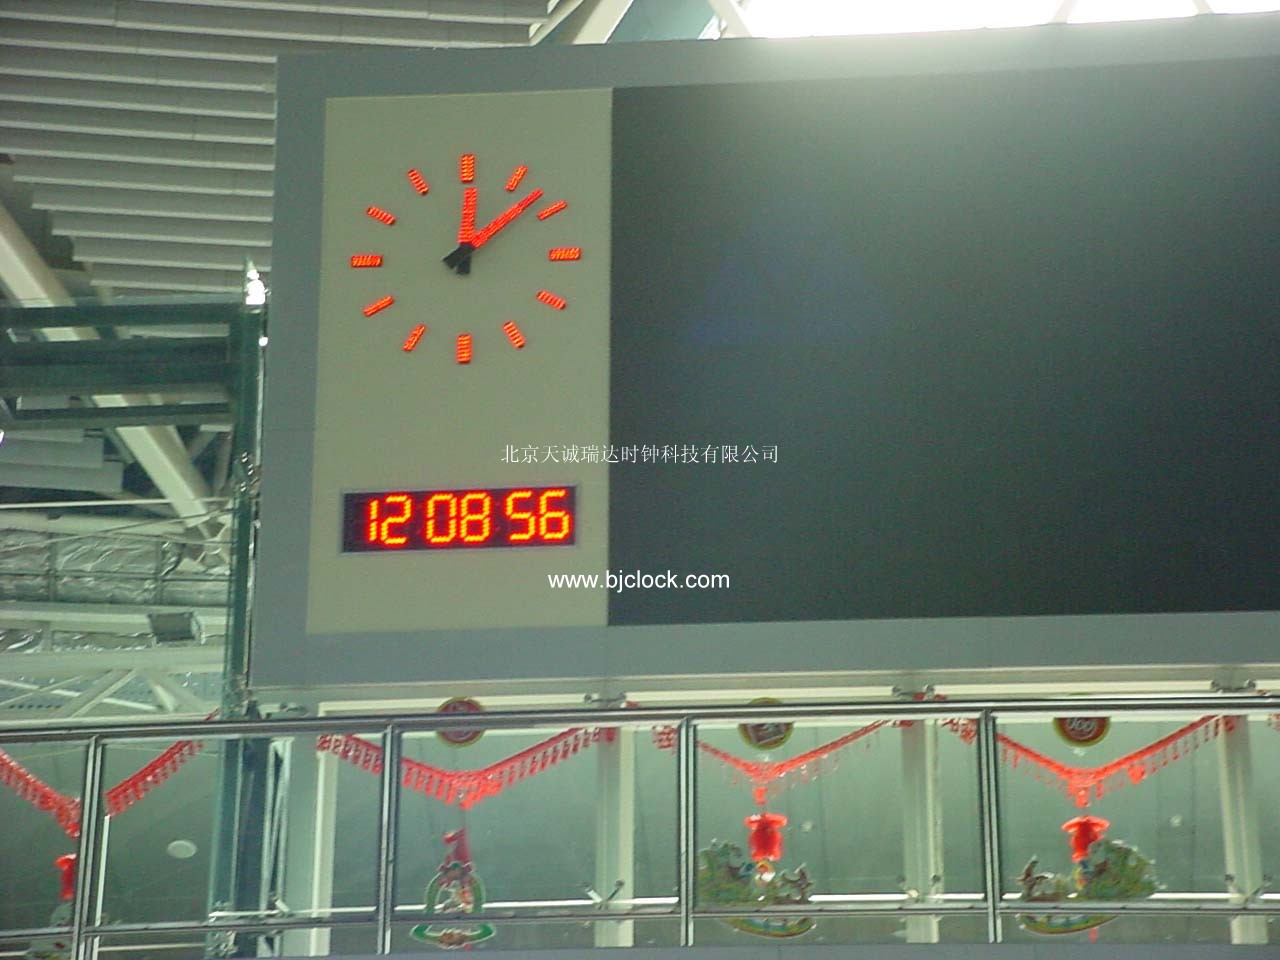 供应体育场馆子母钟，LED大屏模拟指针时钟，数字时钟